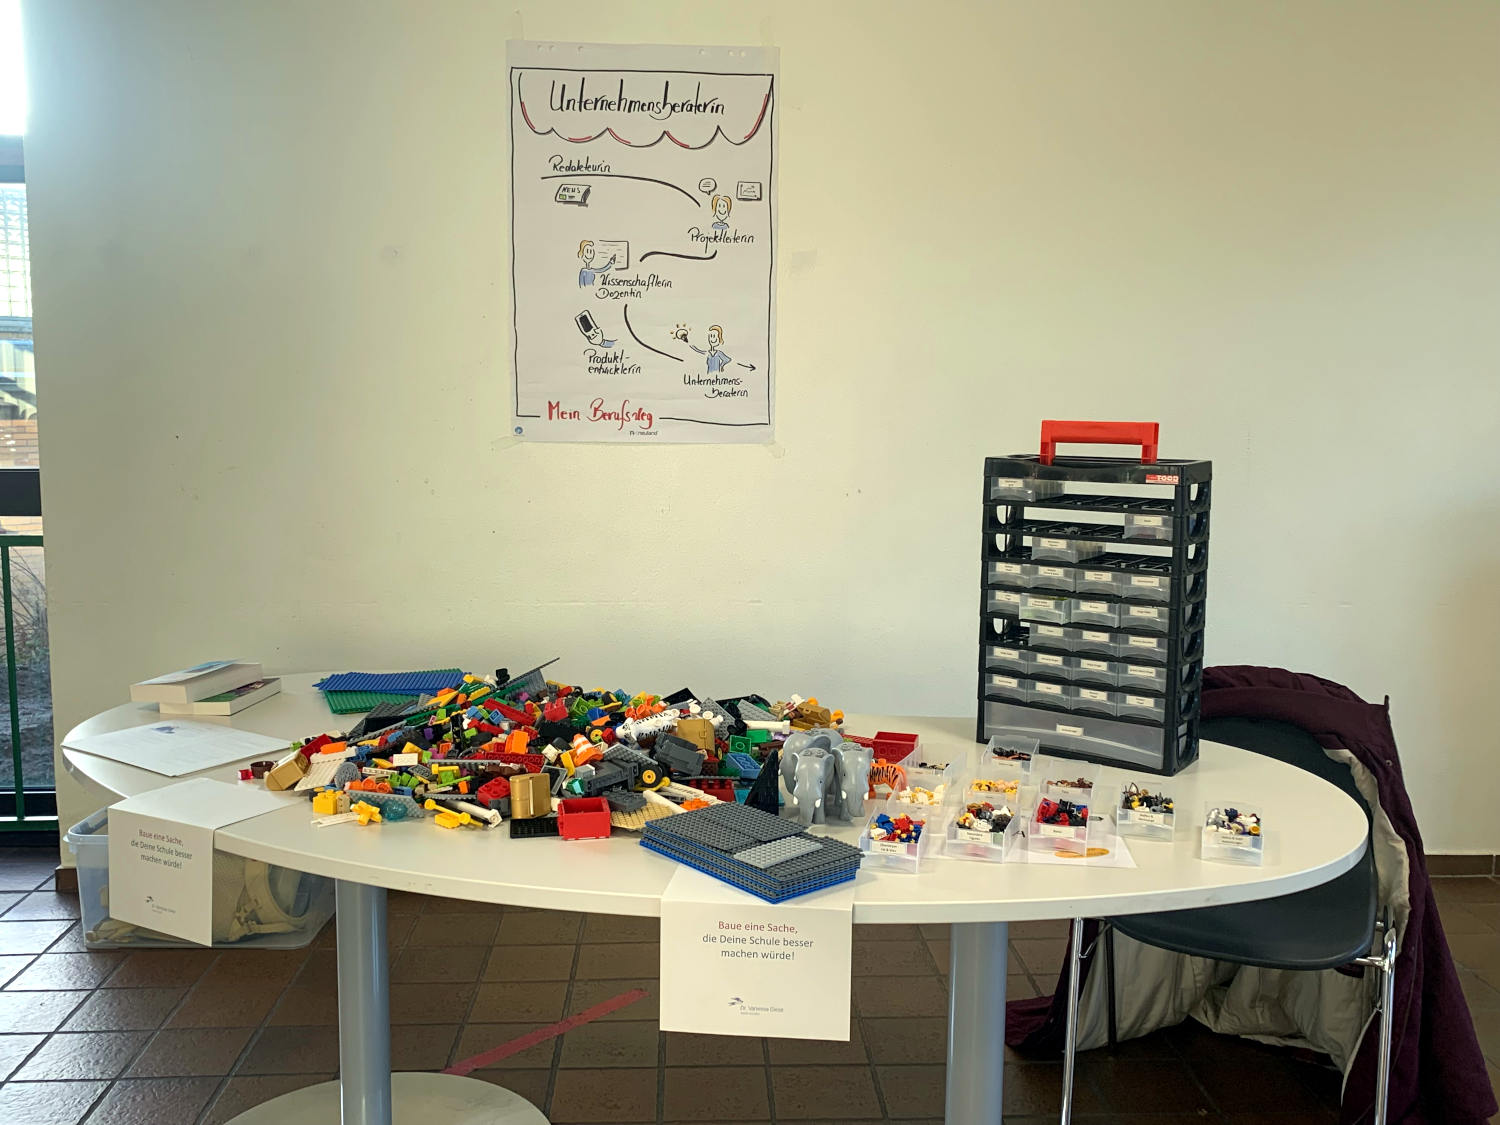 Stand auf der Berufemesse in der Schule: An der Wand ein Plakat mit den bislang ausgeübten Berufen, davor ein Tisch mit Lego